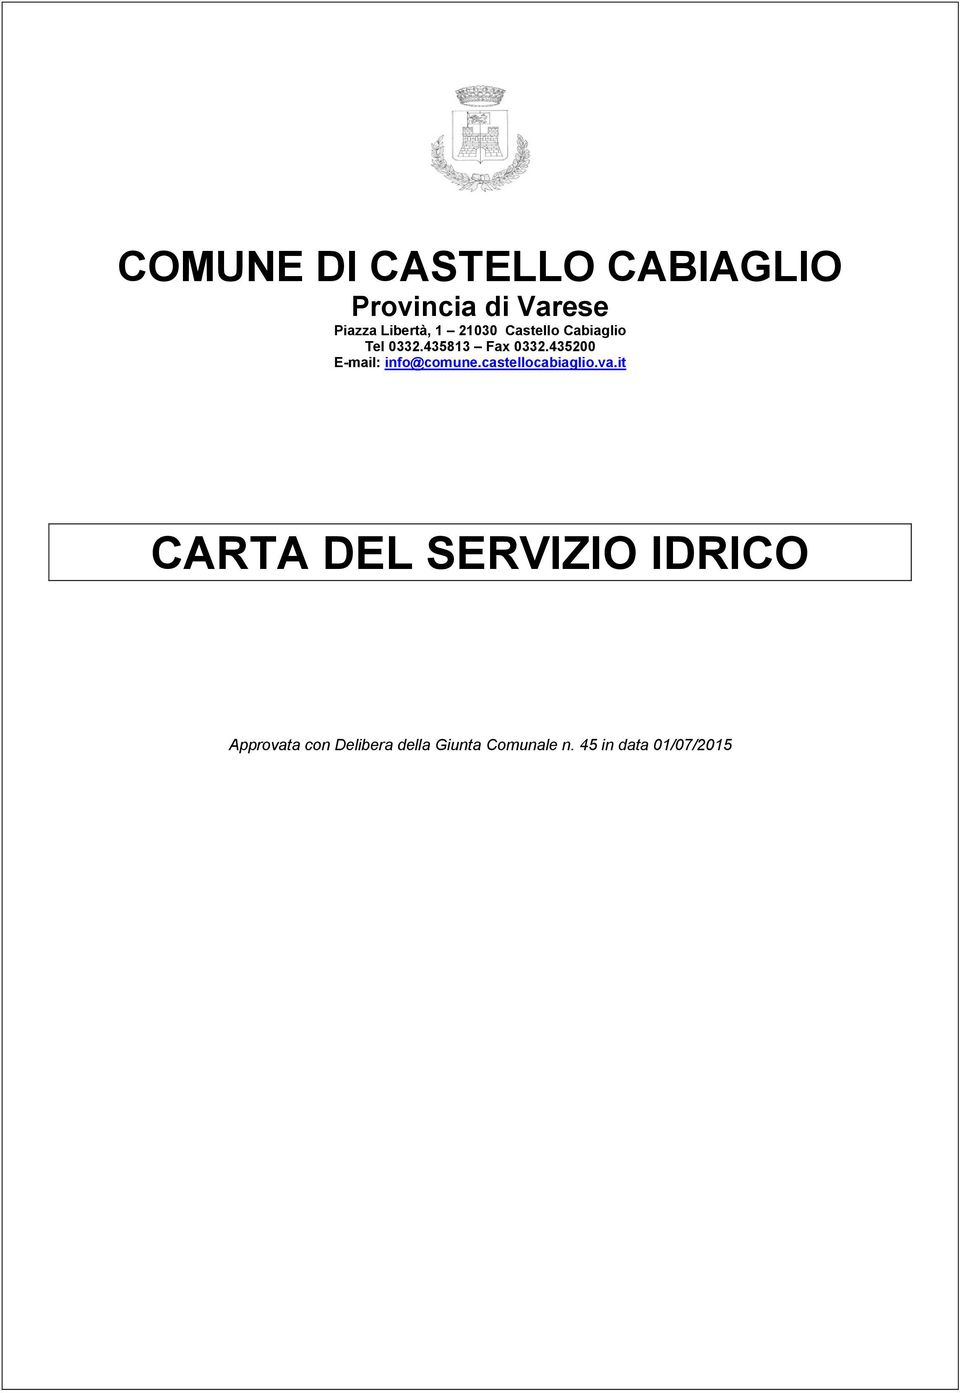 435200 E-mail: info@comune.castellocabiaglio.va.